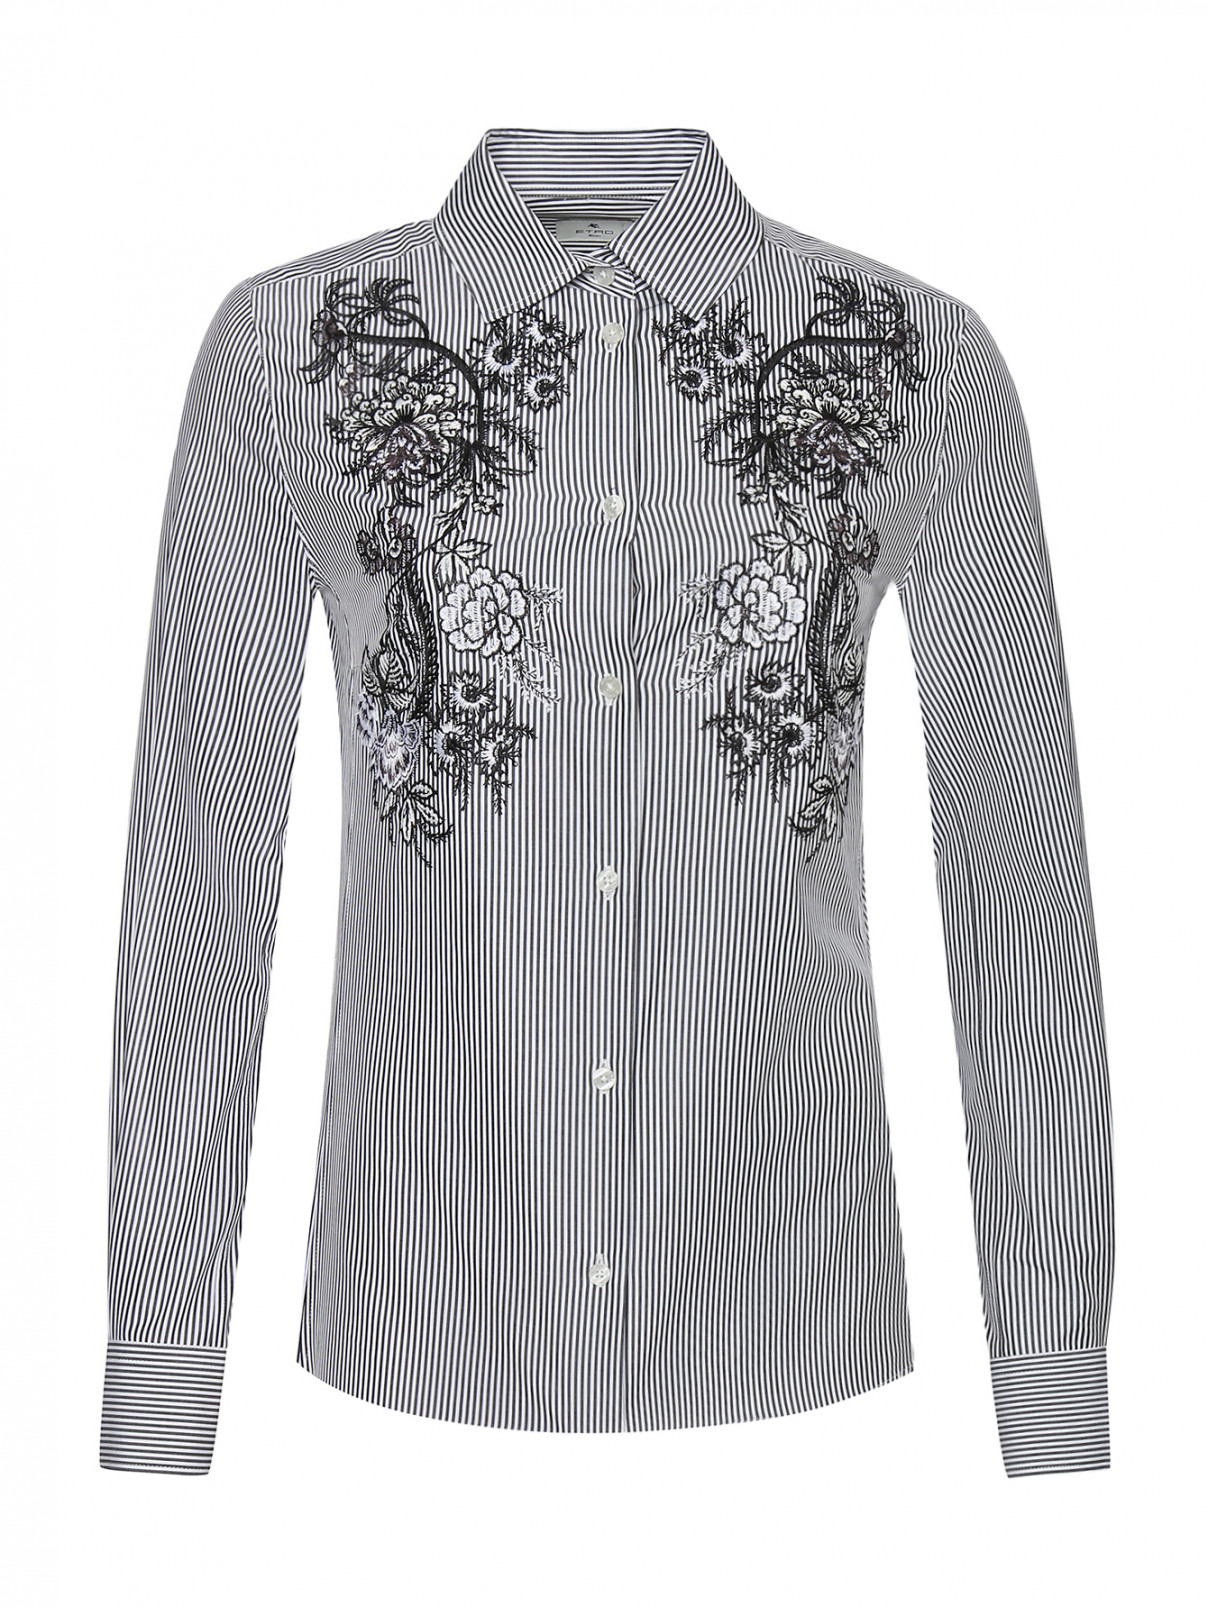 Рубашка из хлопка с нагрудной вышивкой Etro  –  Общий вид  – Цвет:  Белый